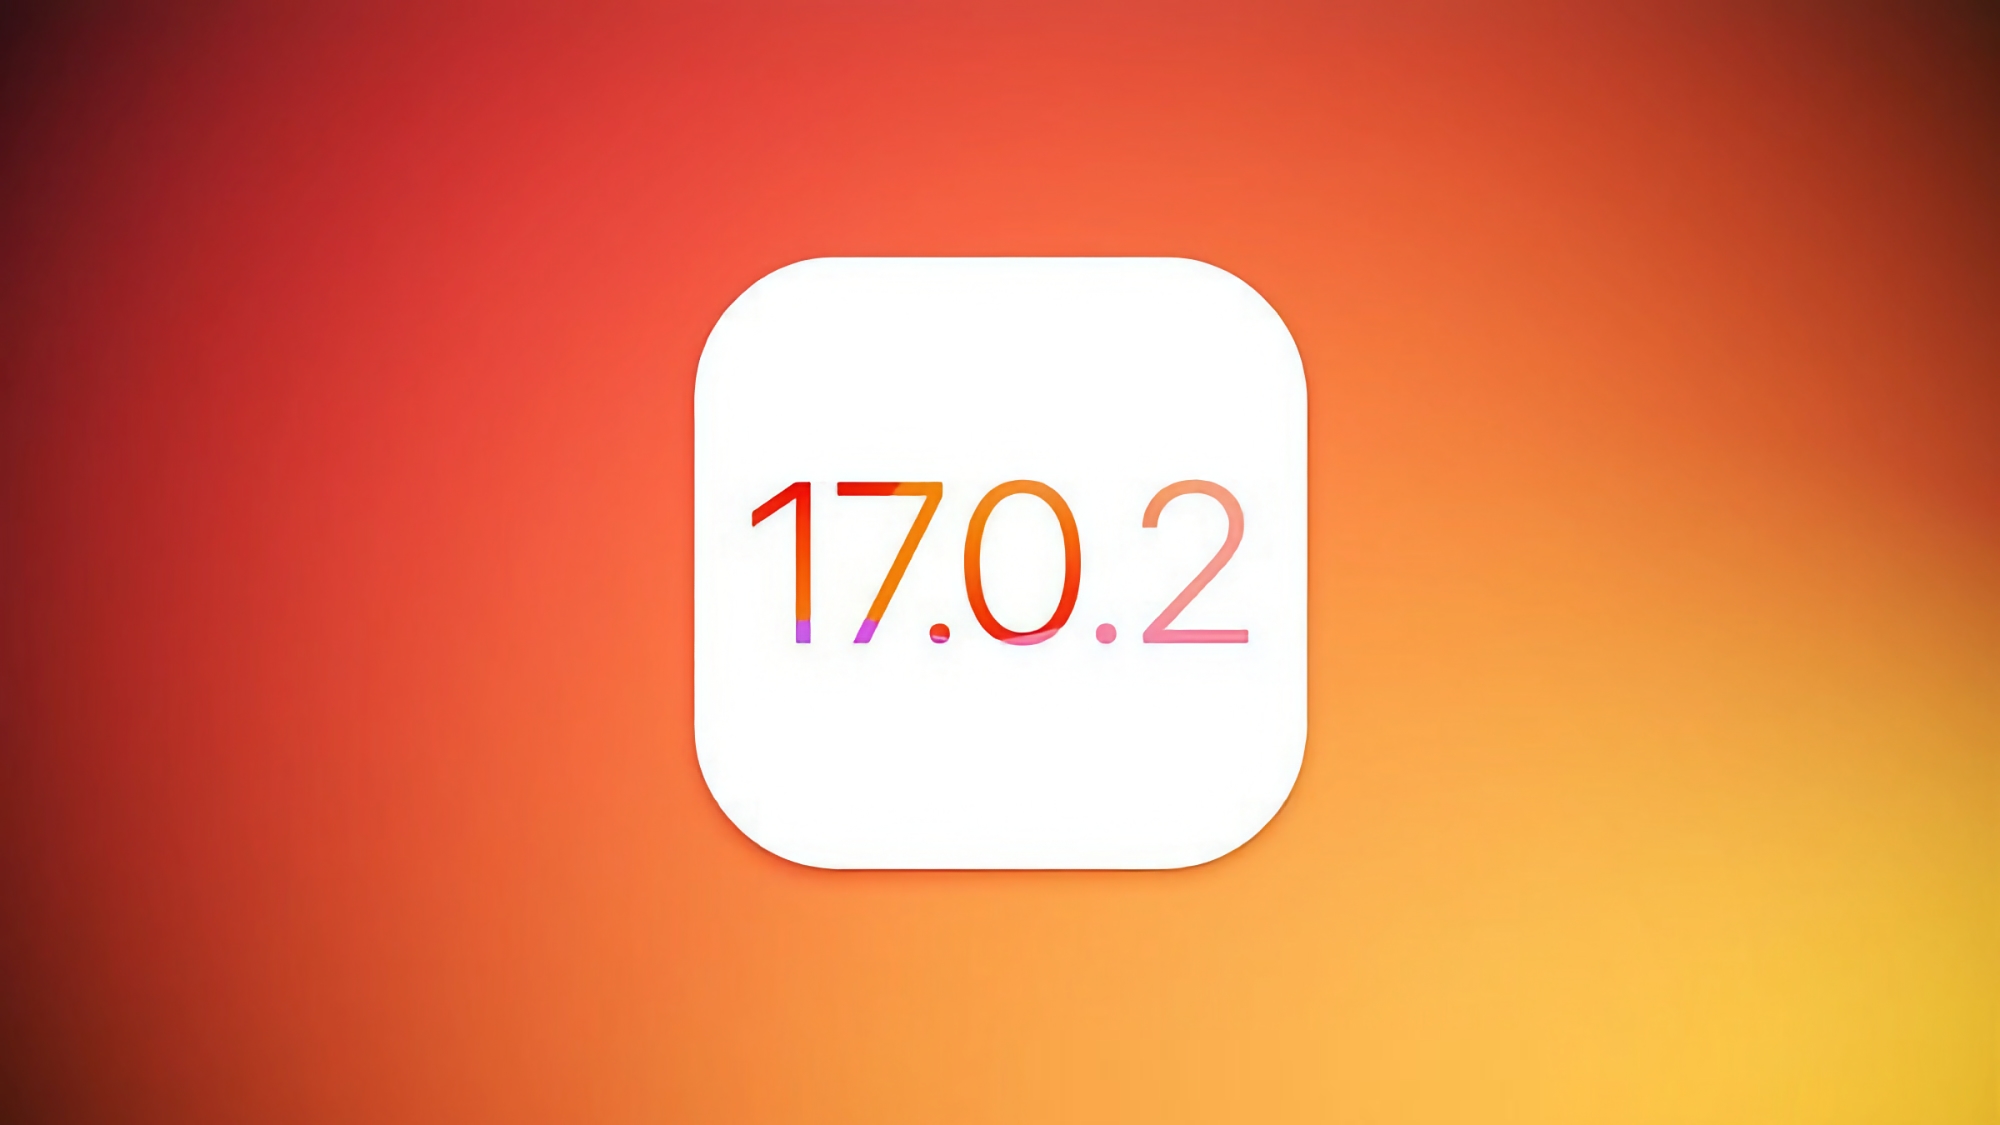 Użytkownicy iPhone'ów zaczęli otrzymywać aktualizację iOS 17.0.2